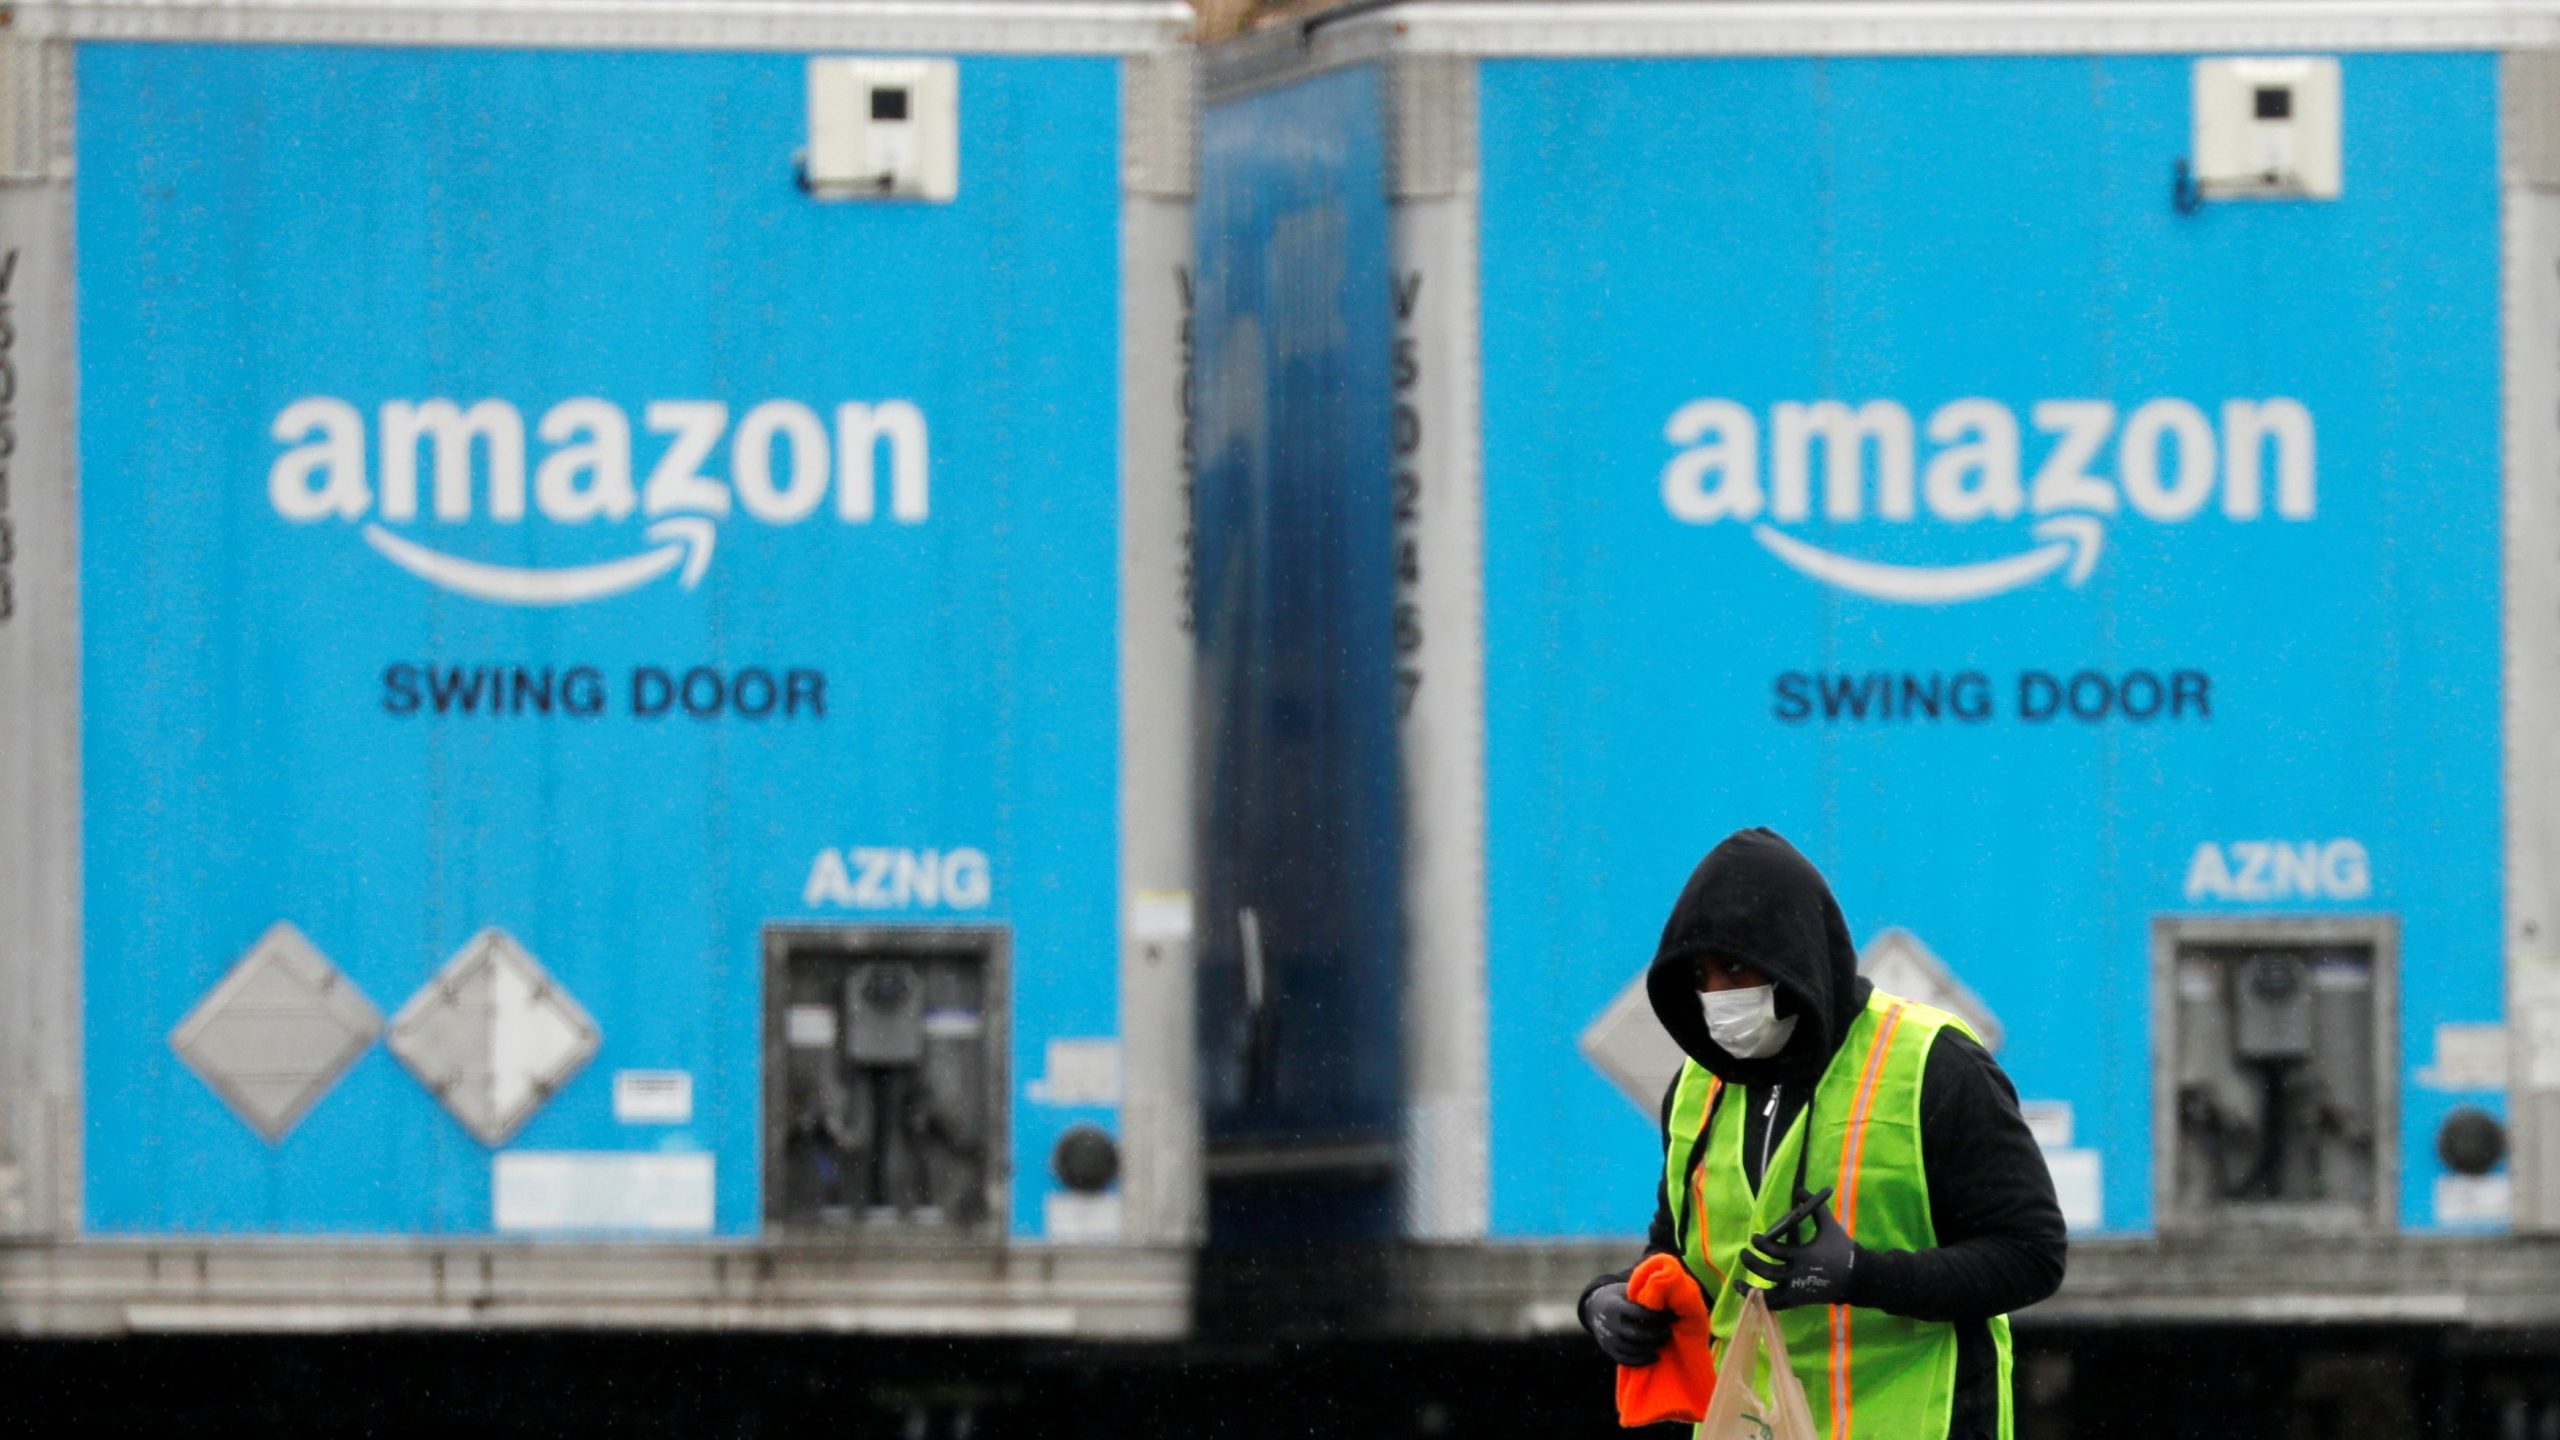 Amazon – Πώς στήνει το δικό της δίκτυο μεταφοράς για να «χτυπήσει» Fedex και UPS